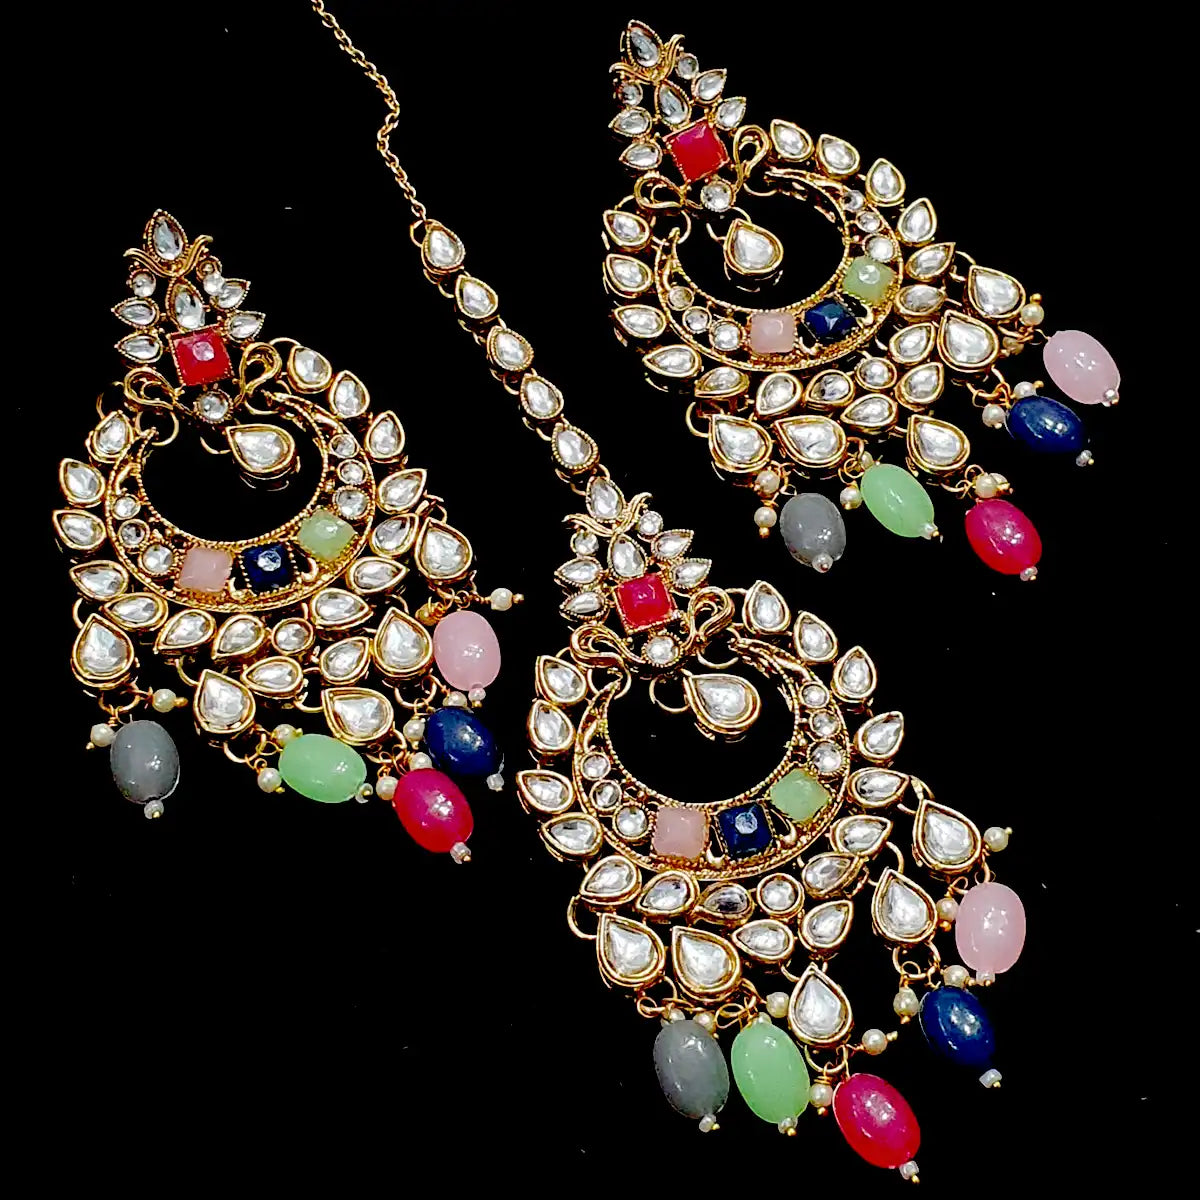 balas earrings price in Pakistan njc-005 multi color